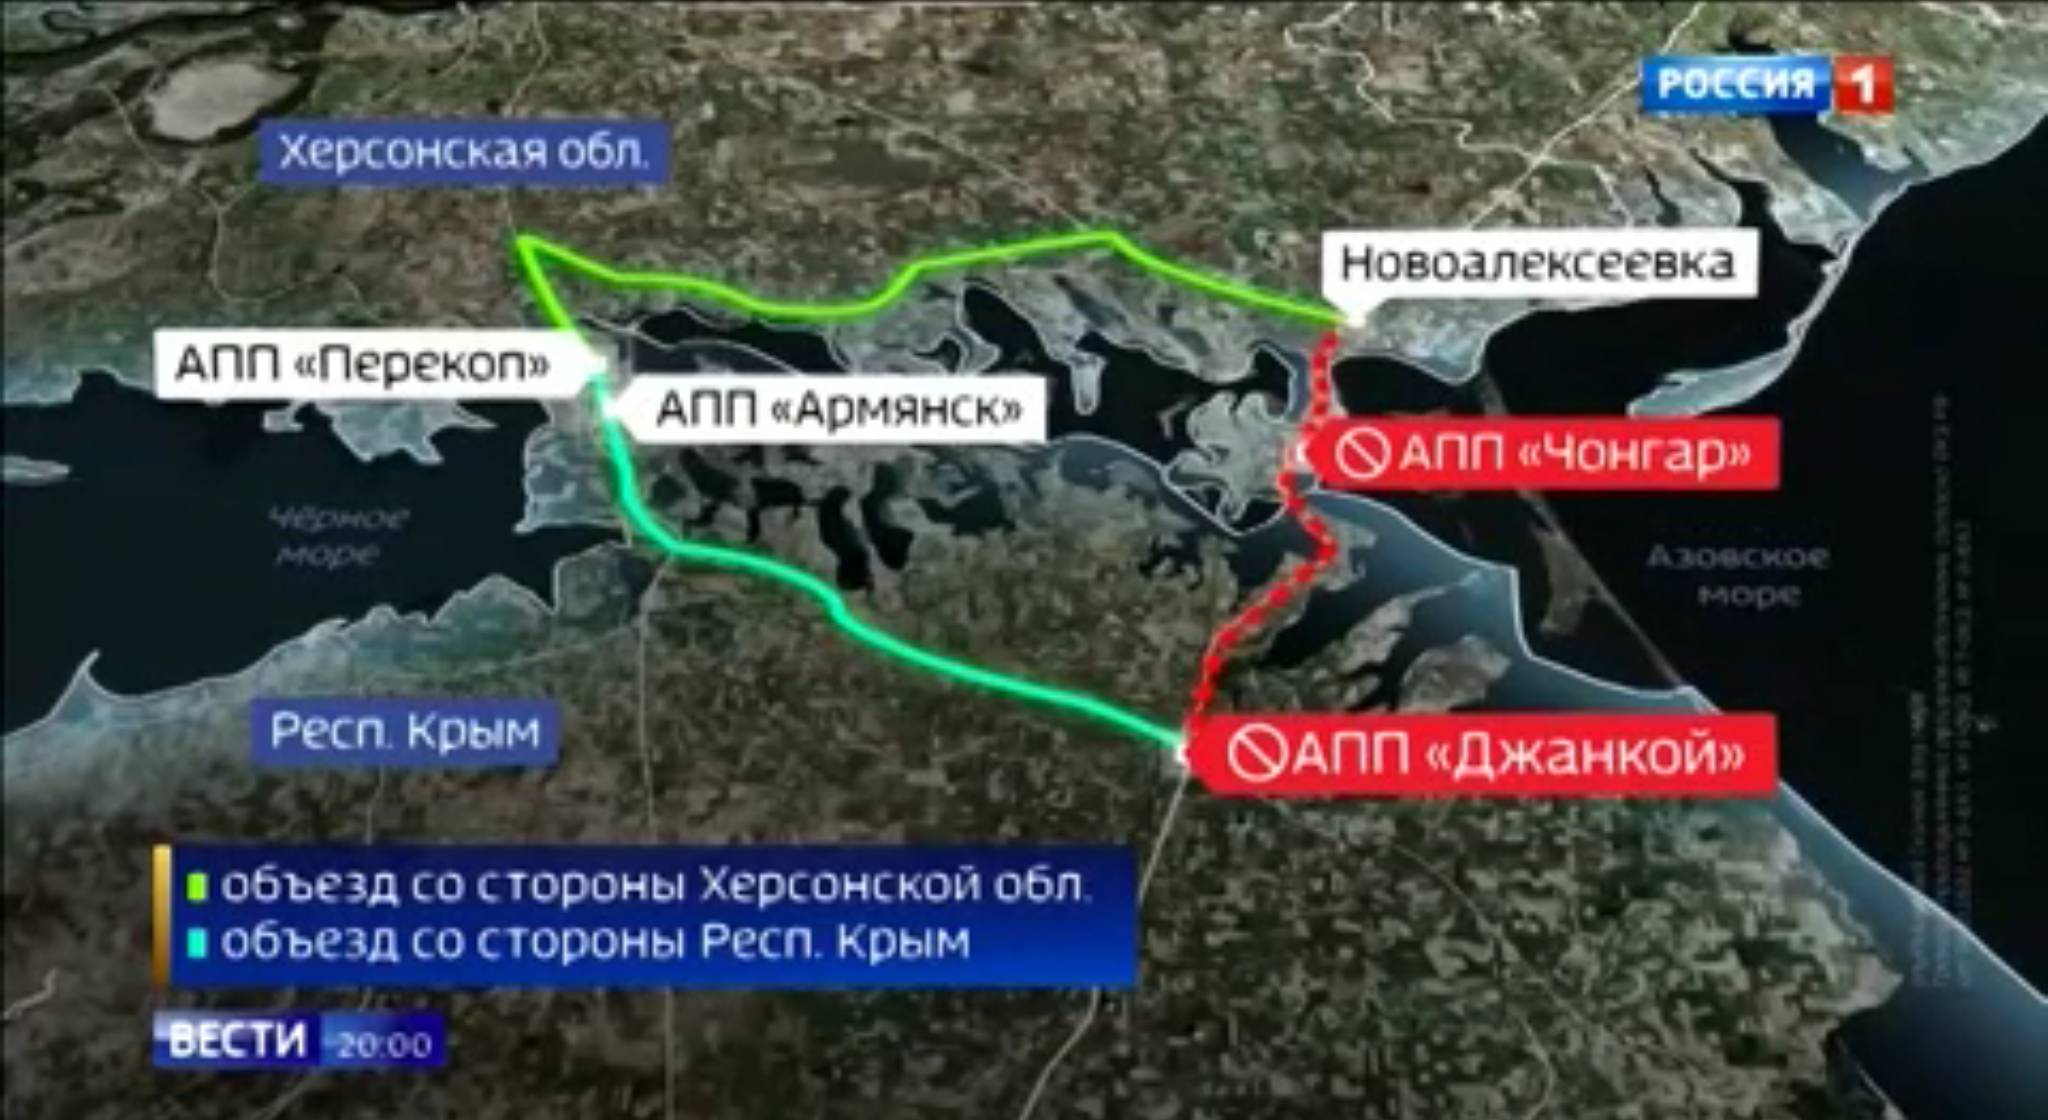 Rosyjska mapa pokzująca dojazd na Krym - wydłuża się znacząco